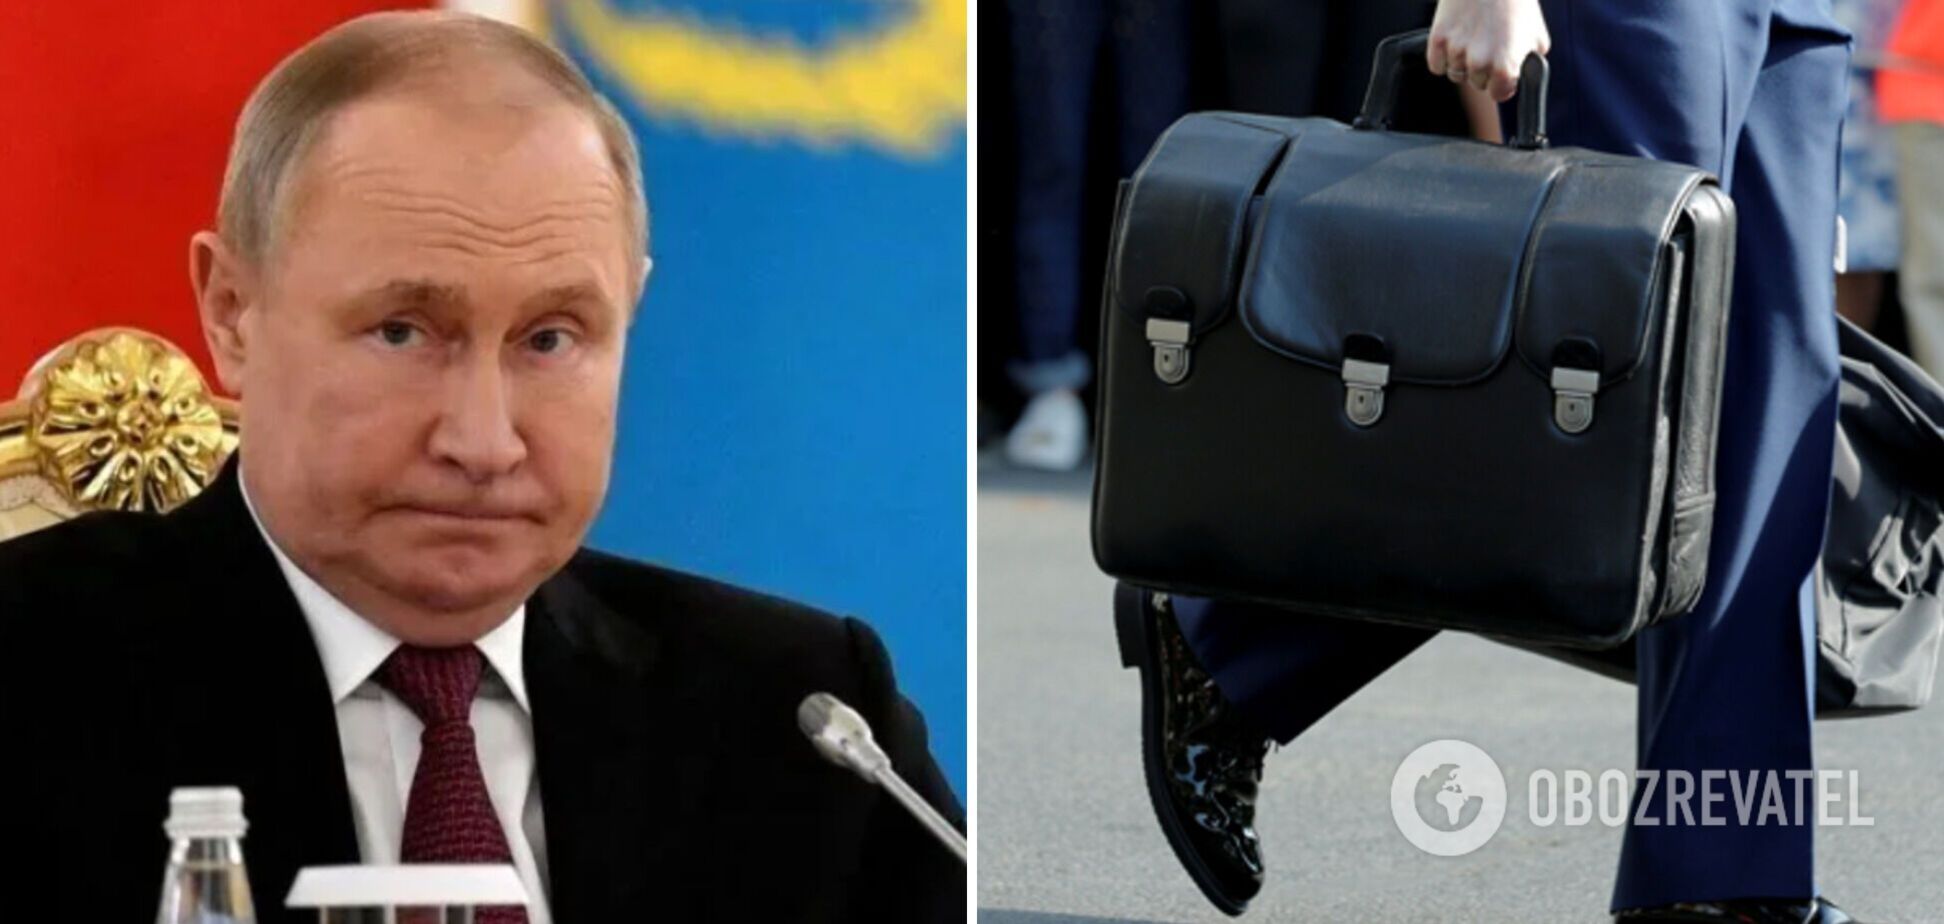 Путин как выдающийся российский 'экскрементатор'